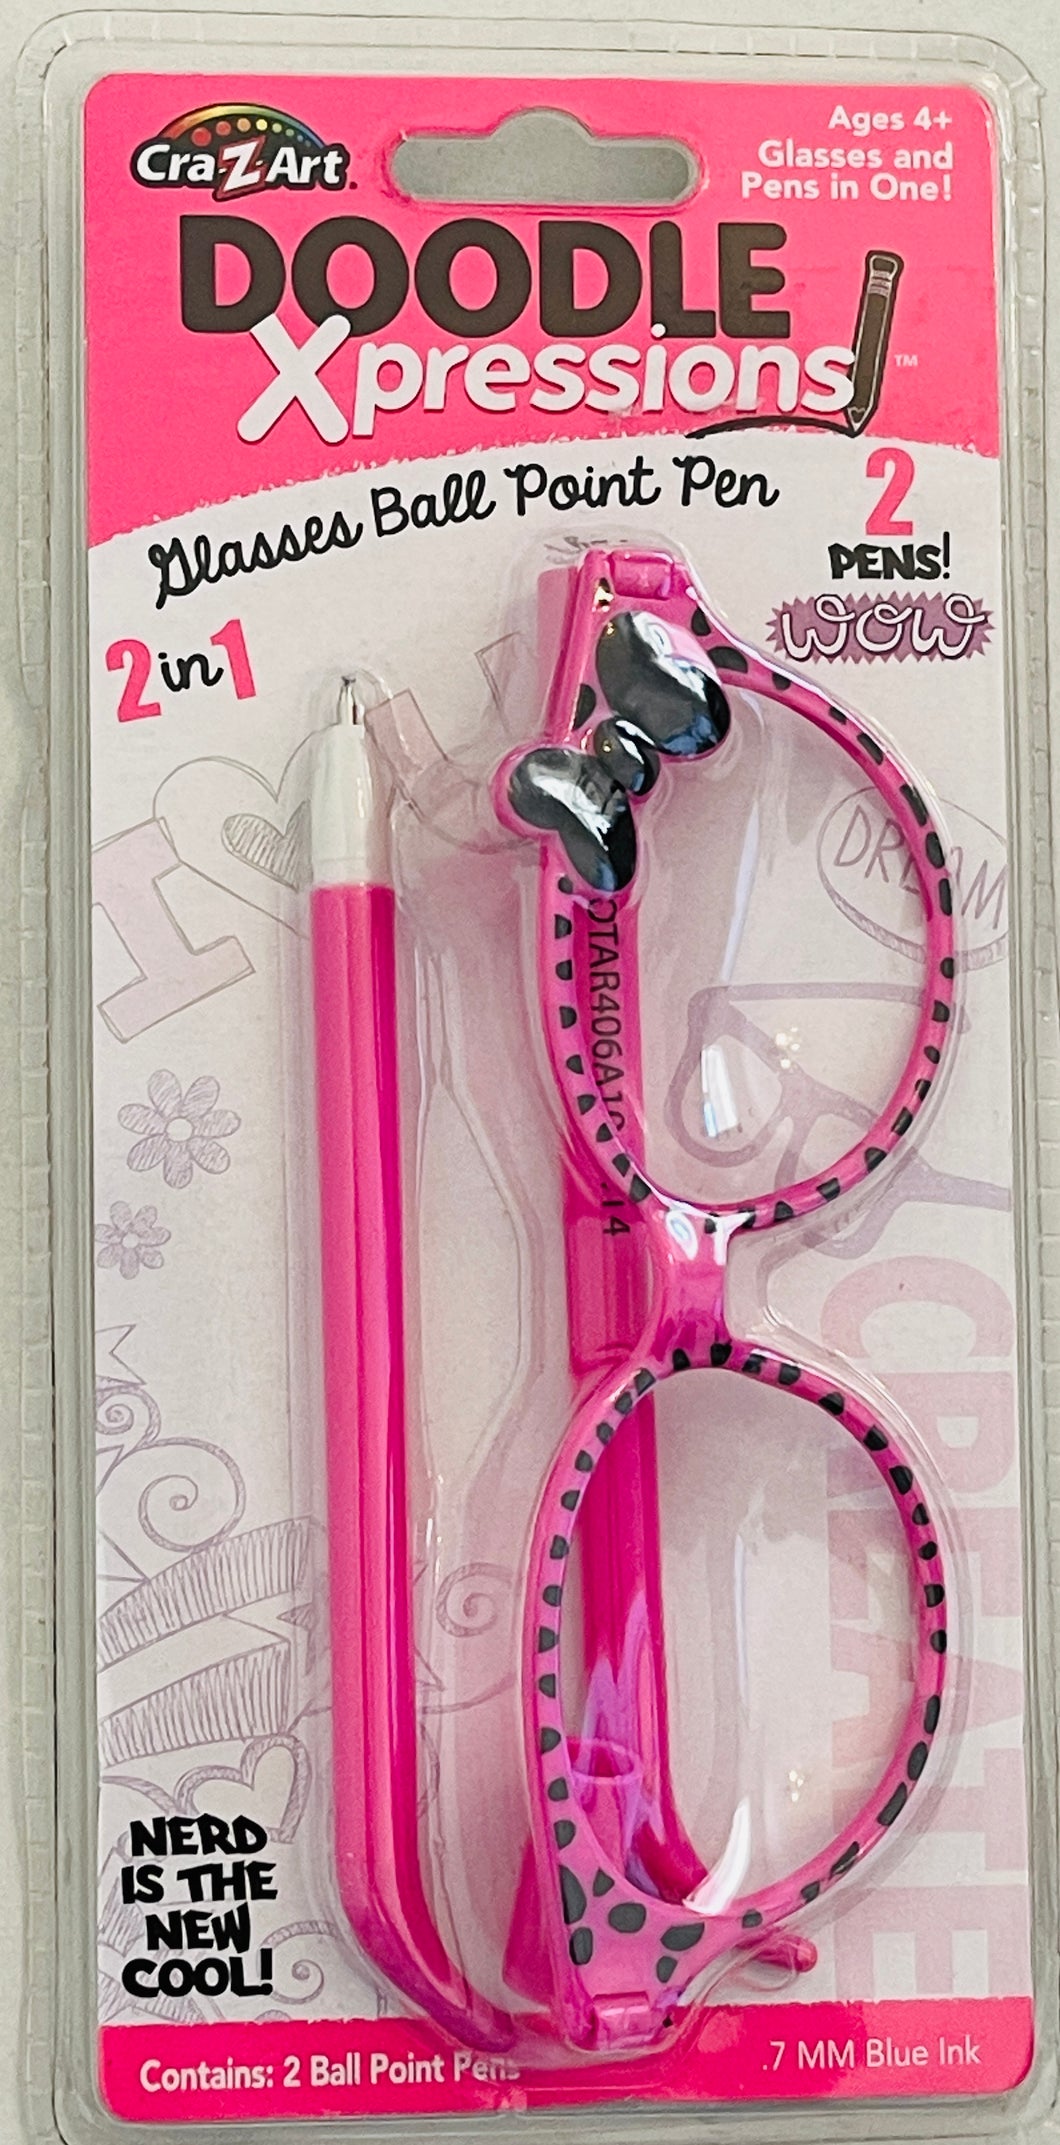 CRA-Z-ART 2014 Doodle Xpressions Decorative Cheetah Bow Glasses & Pens